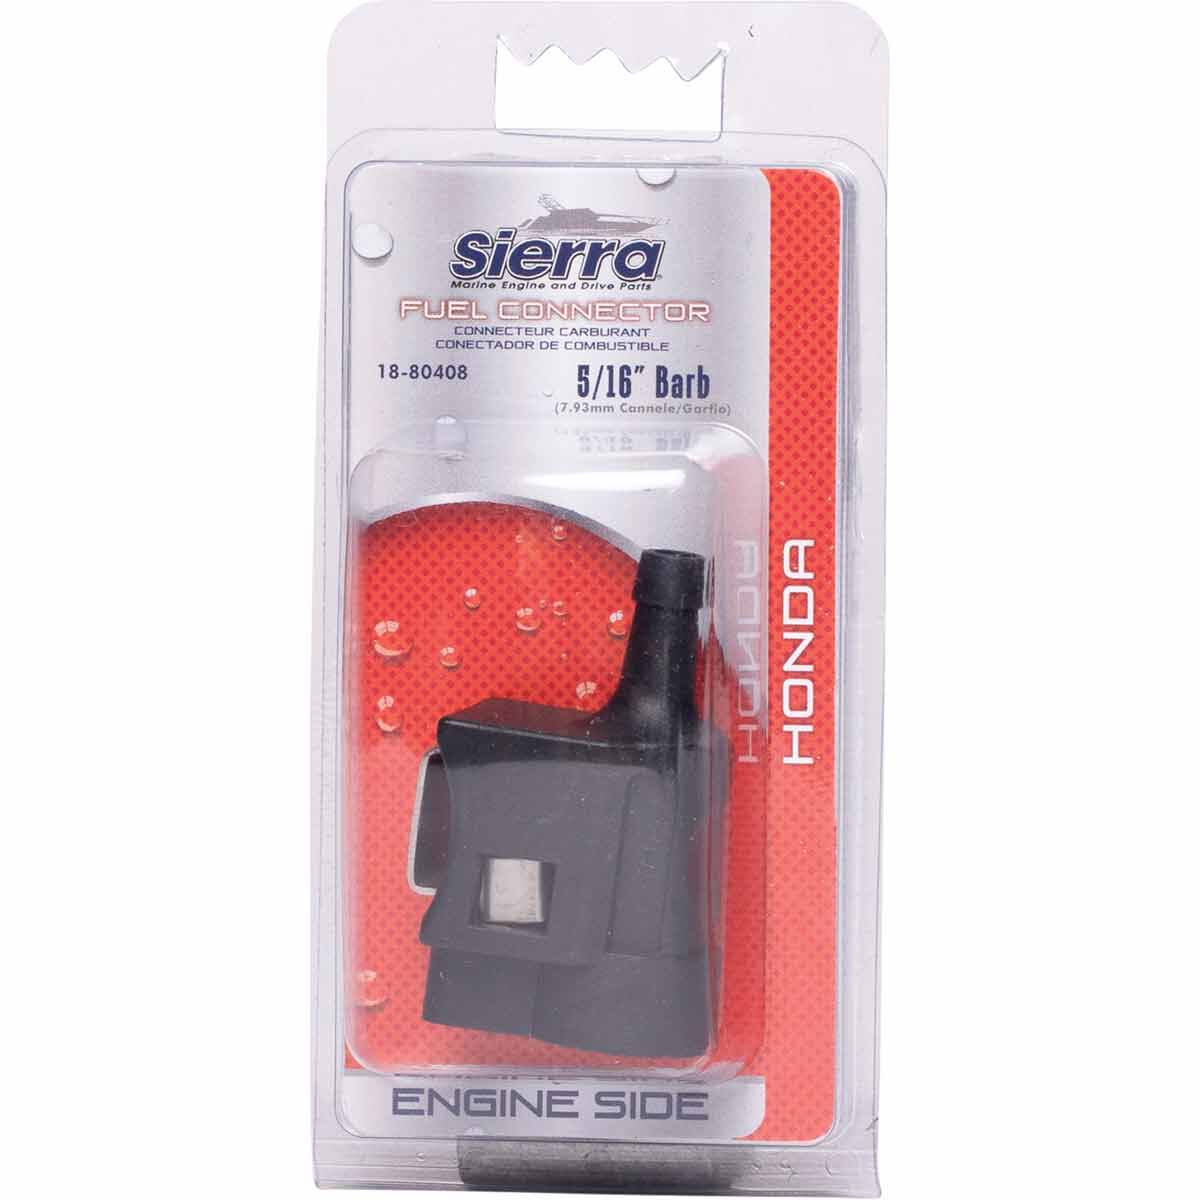 Sierra Fuel Connector - 5/16" S-18-80408, , scaau_hi-res